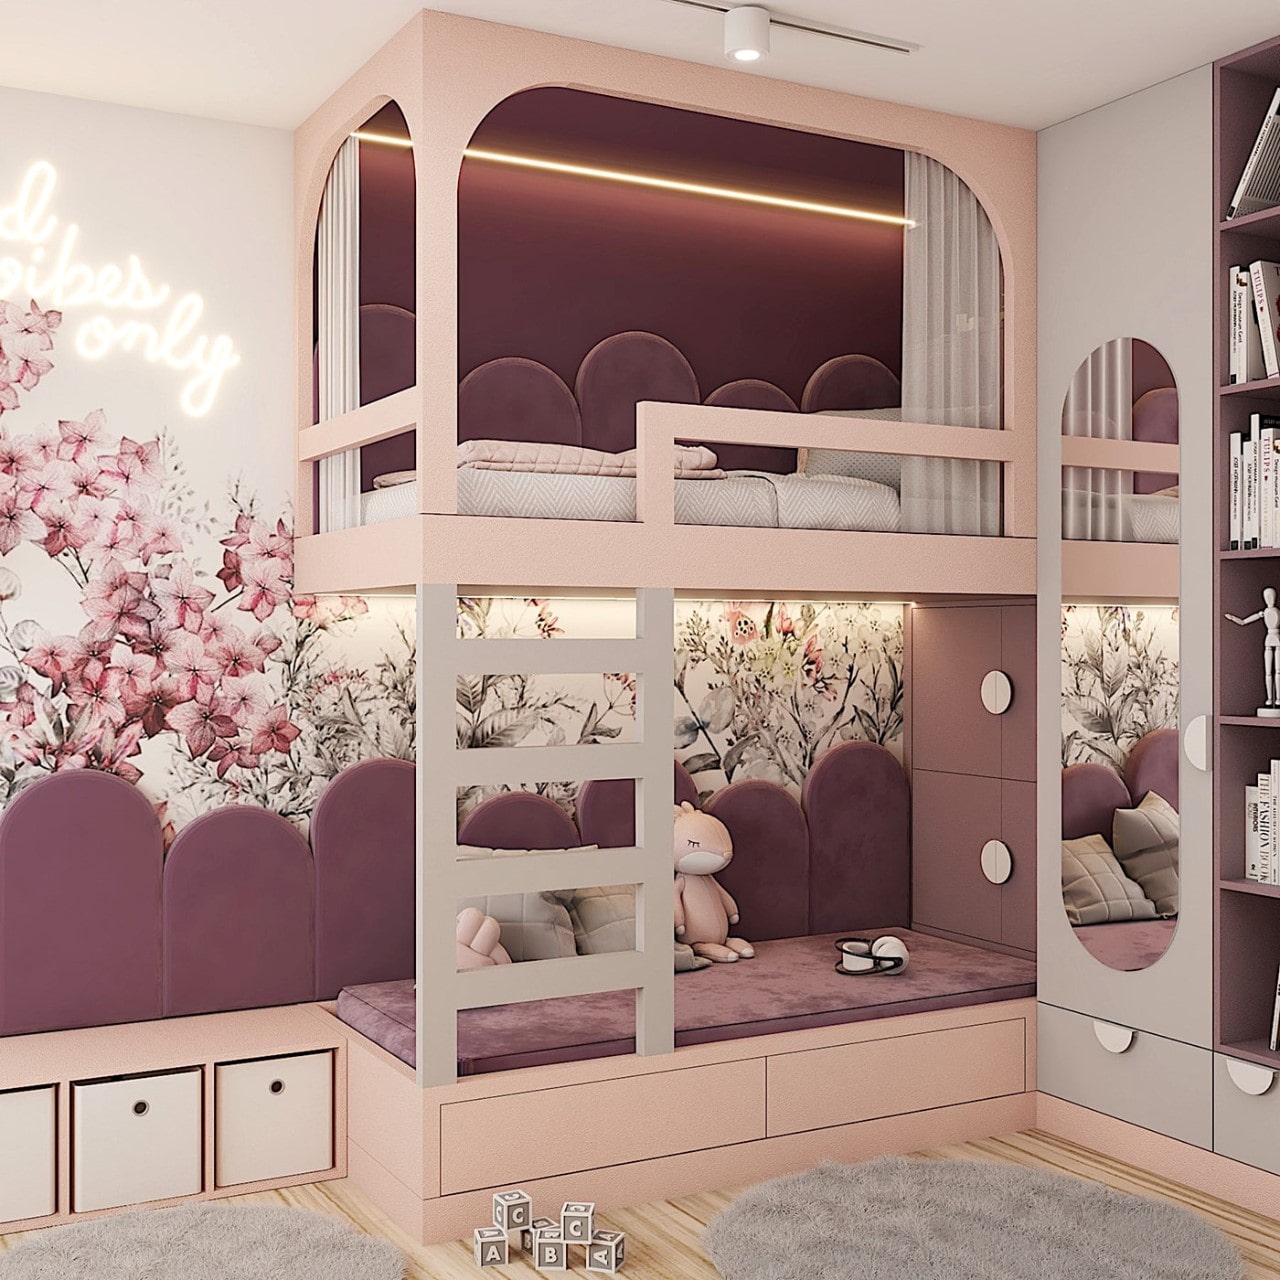 Giường tầng màu hồng phối thêm màu tím cho bé